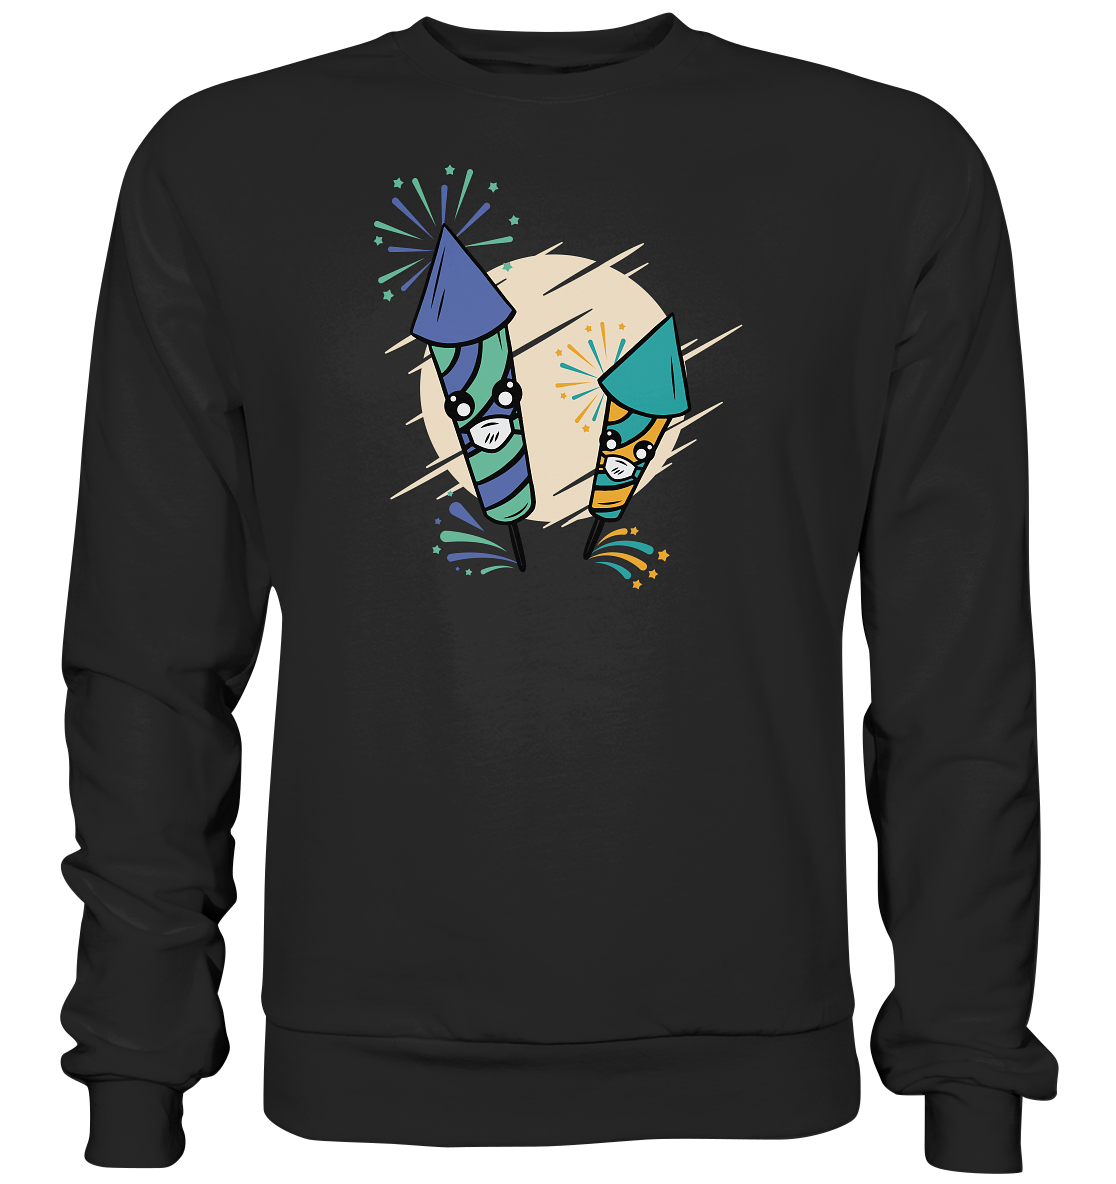 Feuerwerks T-Shirt , Silvester , Böller , T-Shirt für ein Feuerwerksfan - Premium Sweatshirt